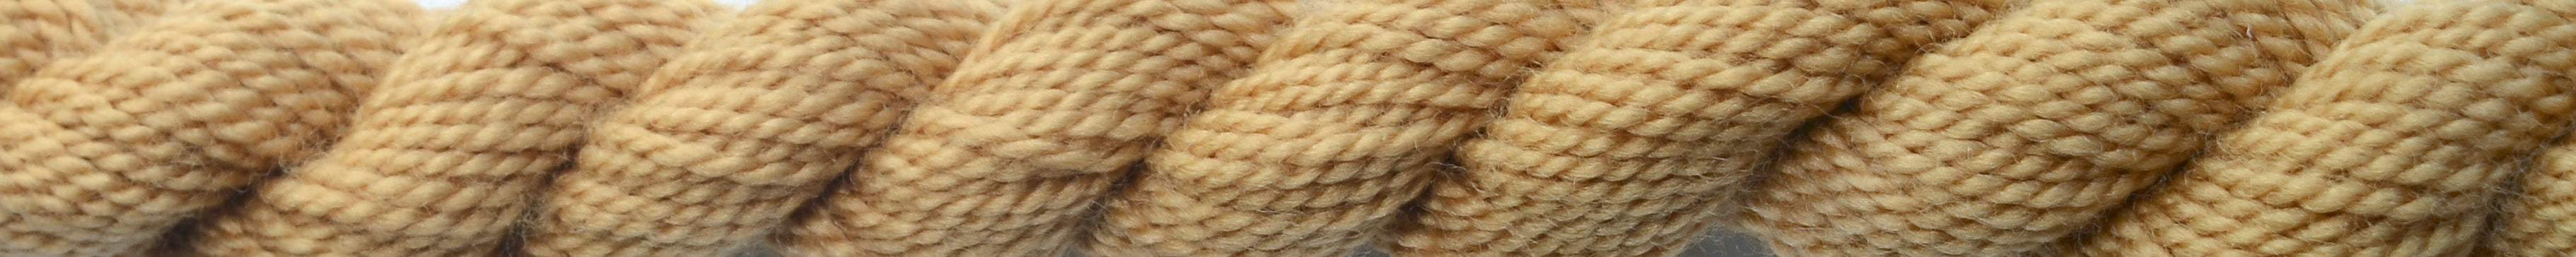 WIL - Vineyard Silk - Merino Wool - M-1049 - Snapdragon